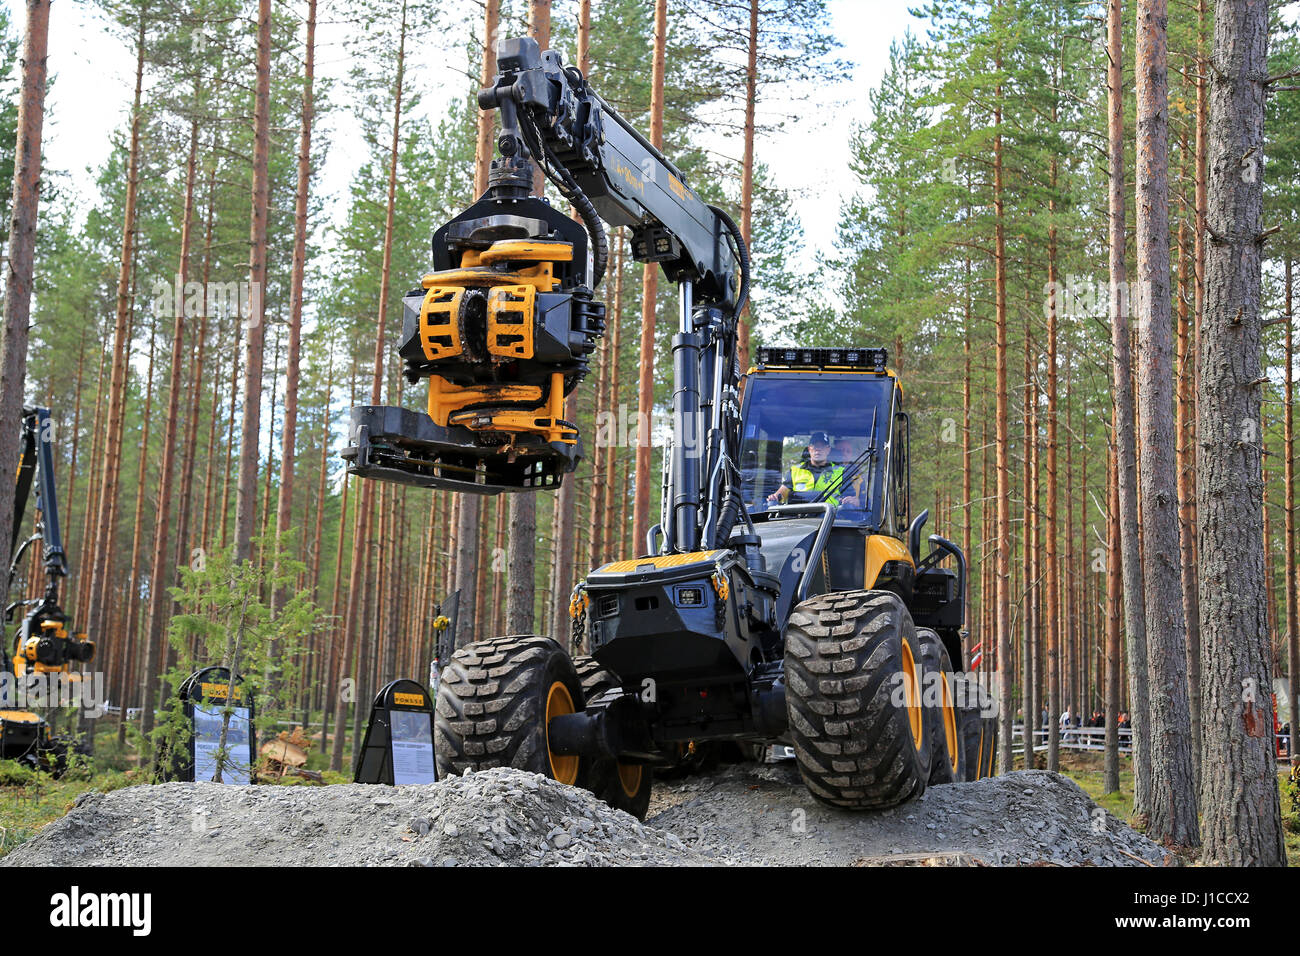 JAMSA, Finnland - 1. September 2016: Wald Ponsse Harvester Ergo und Harvesterkopf präsentiert während der Fahrt über unebenes Gelände, eine Arbeit Demo b Stockfoto